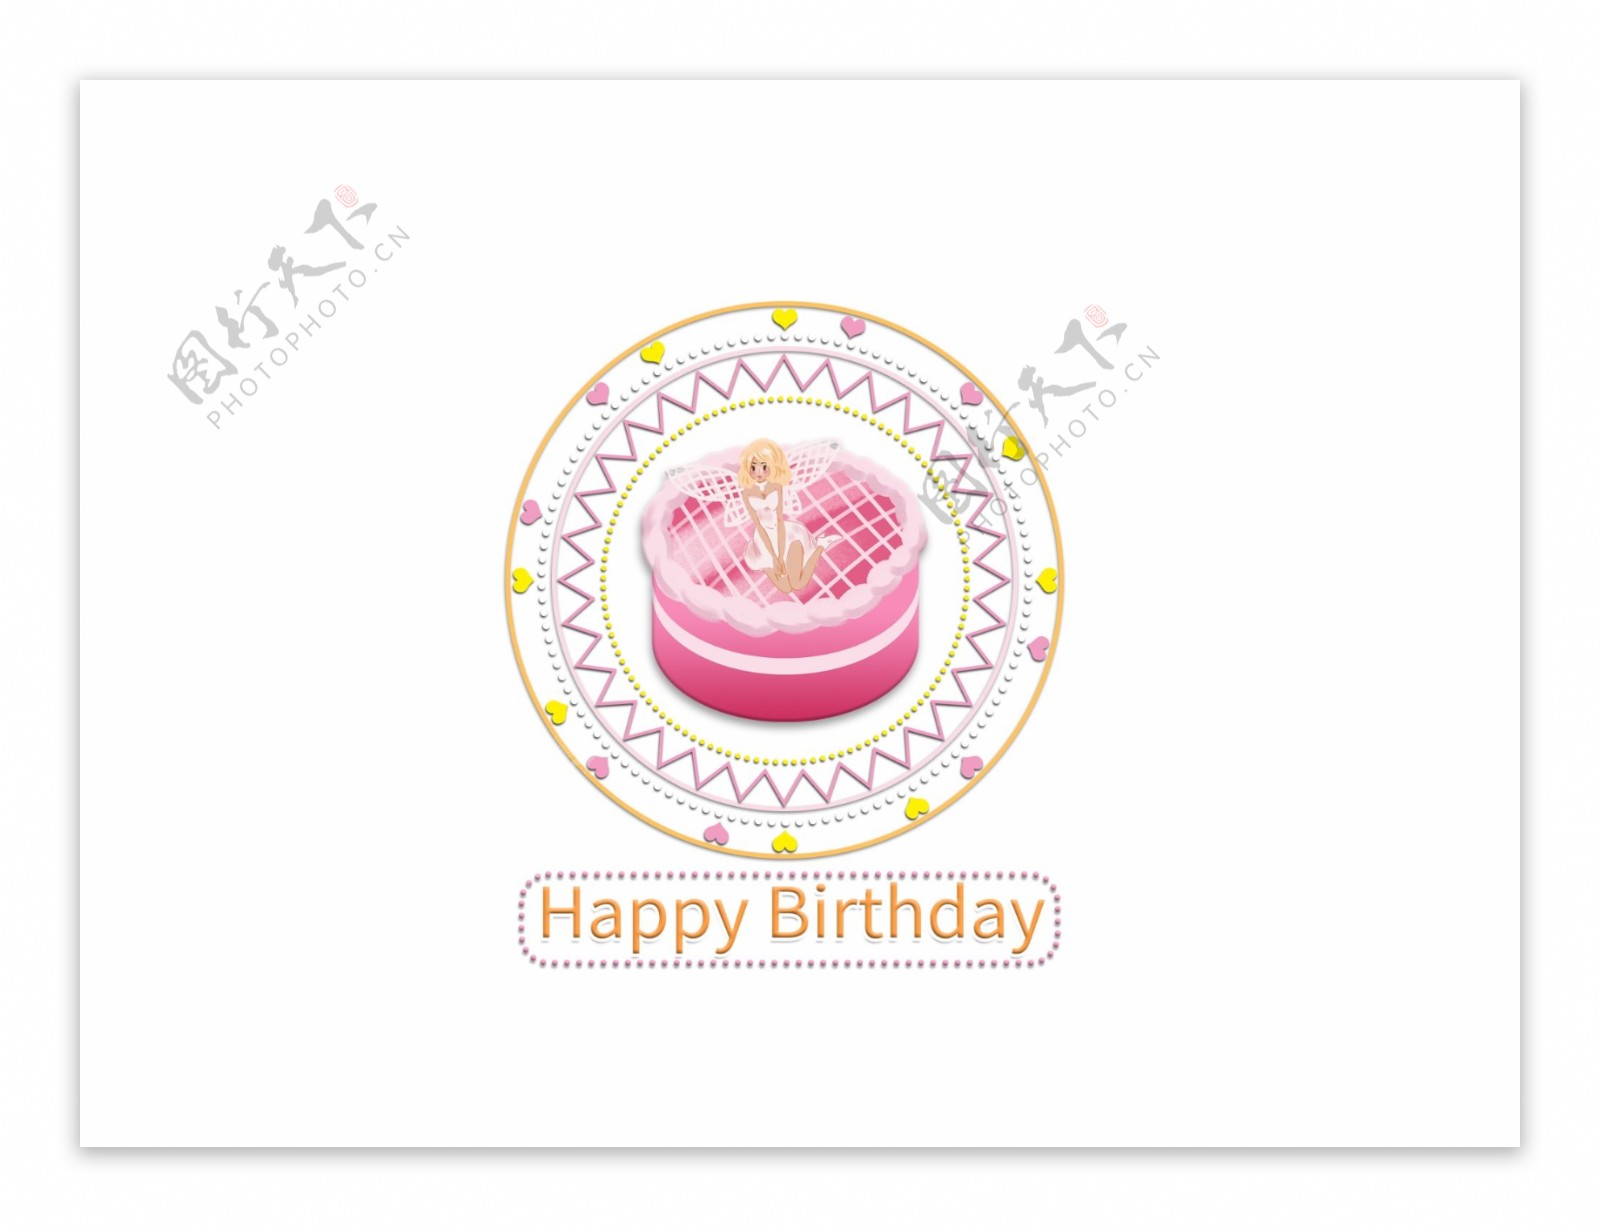 蛋糕粉红色标志设计